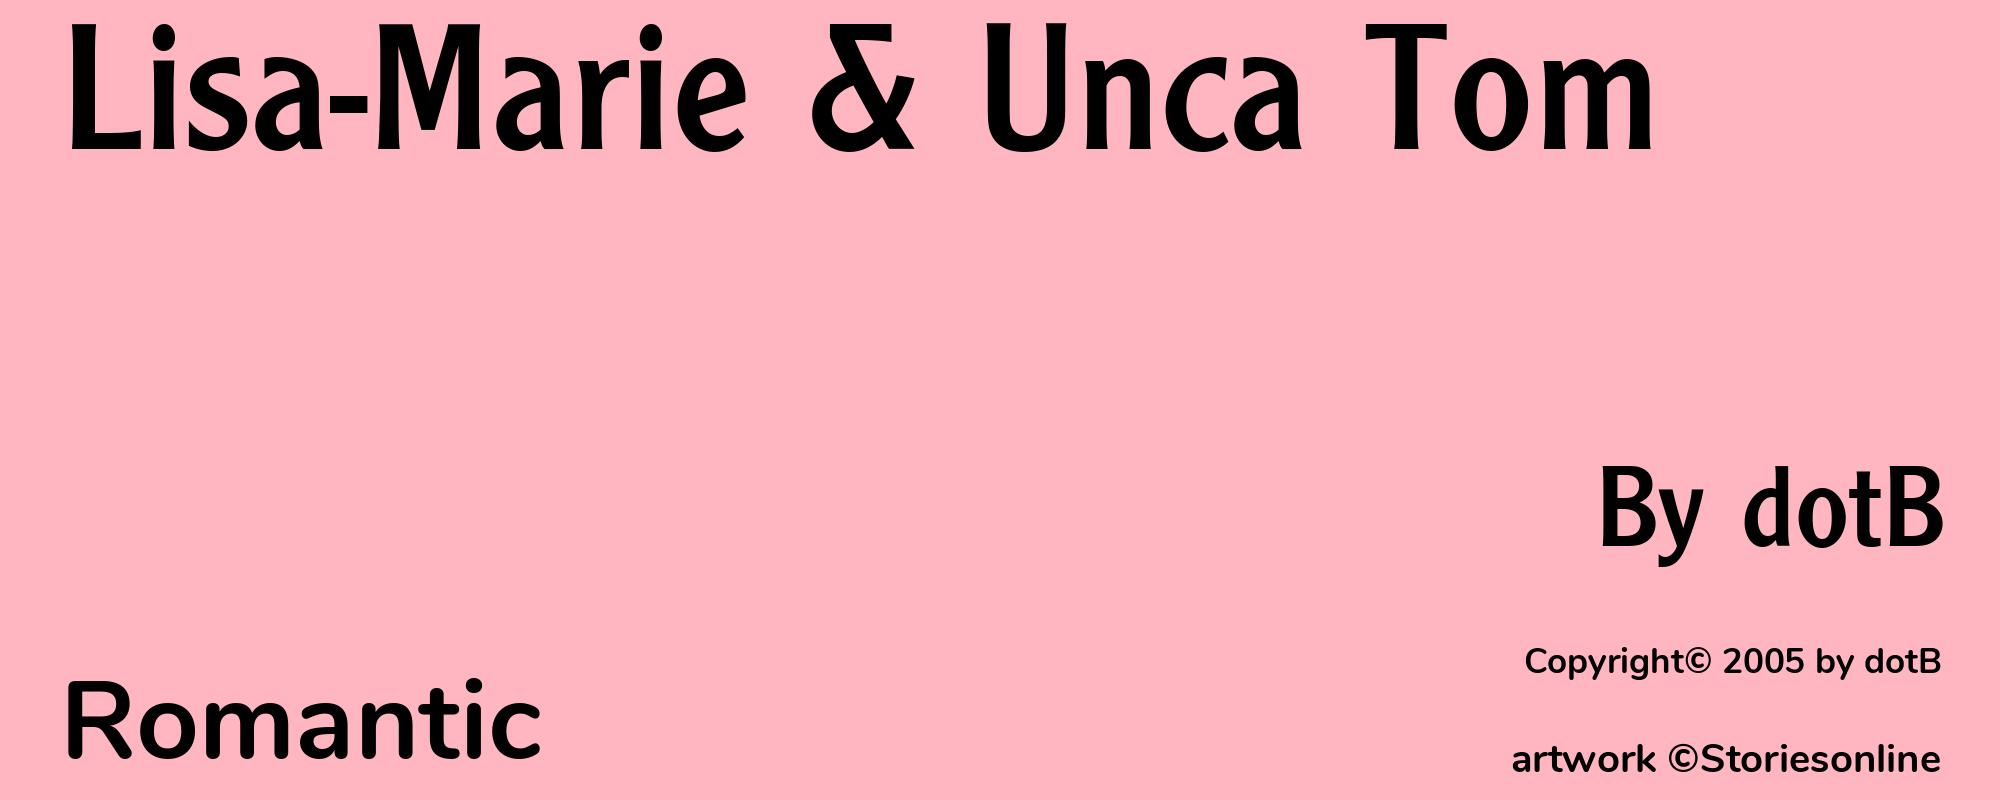 Lisa-Marie & Unca Tom - Cover